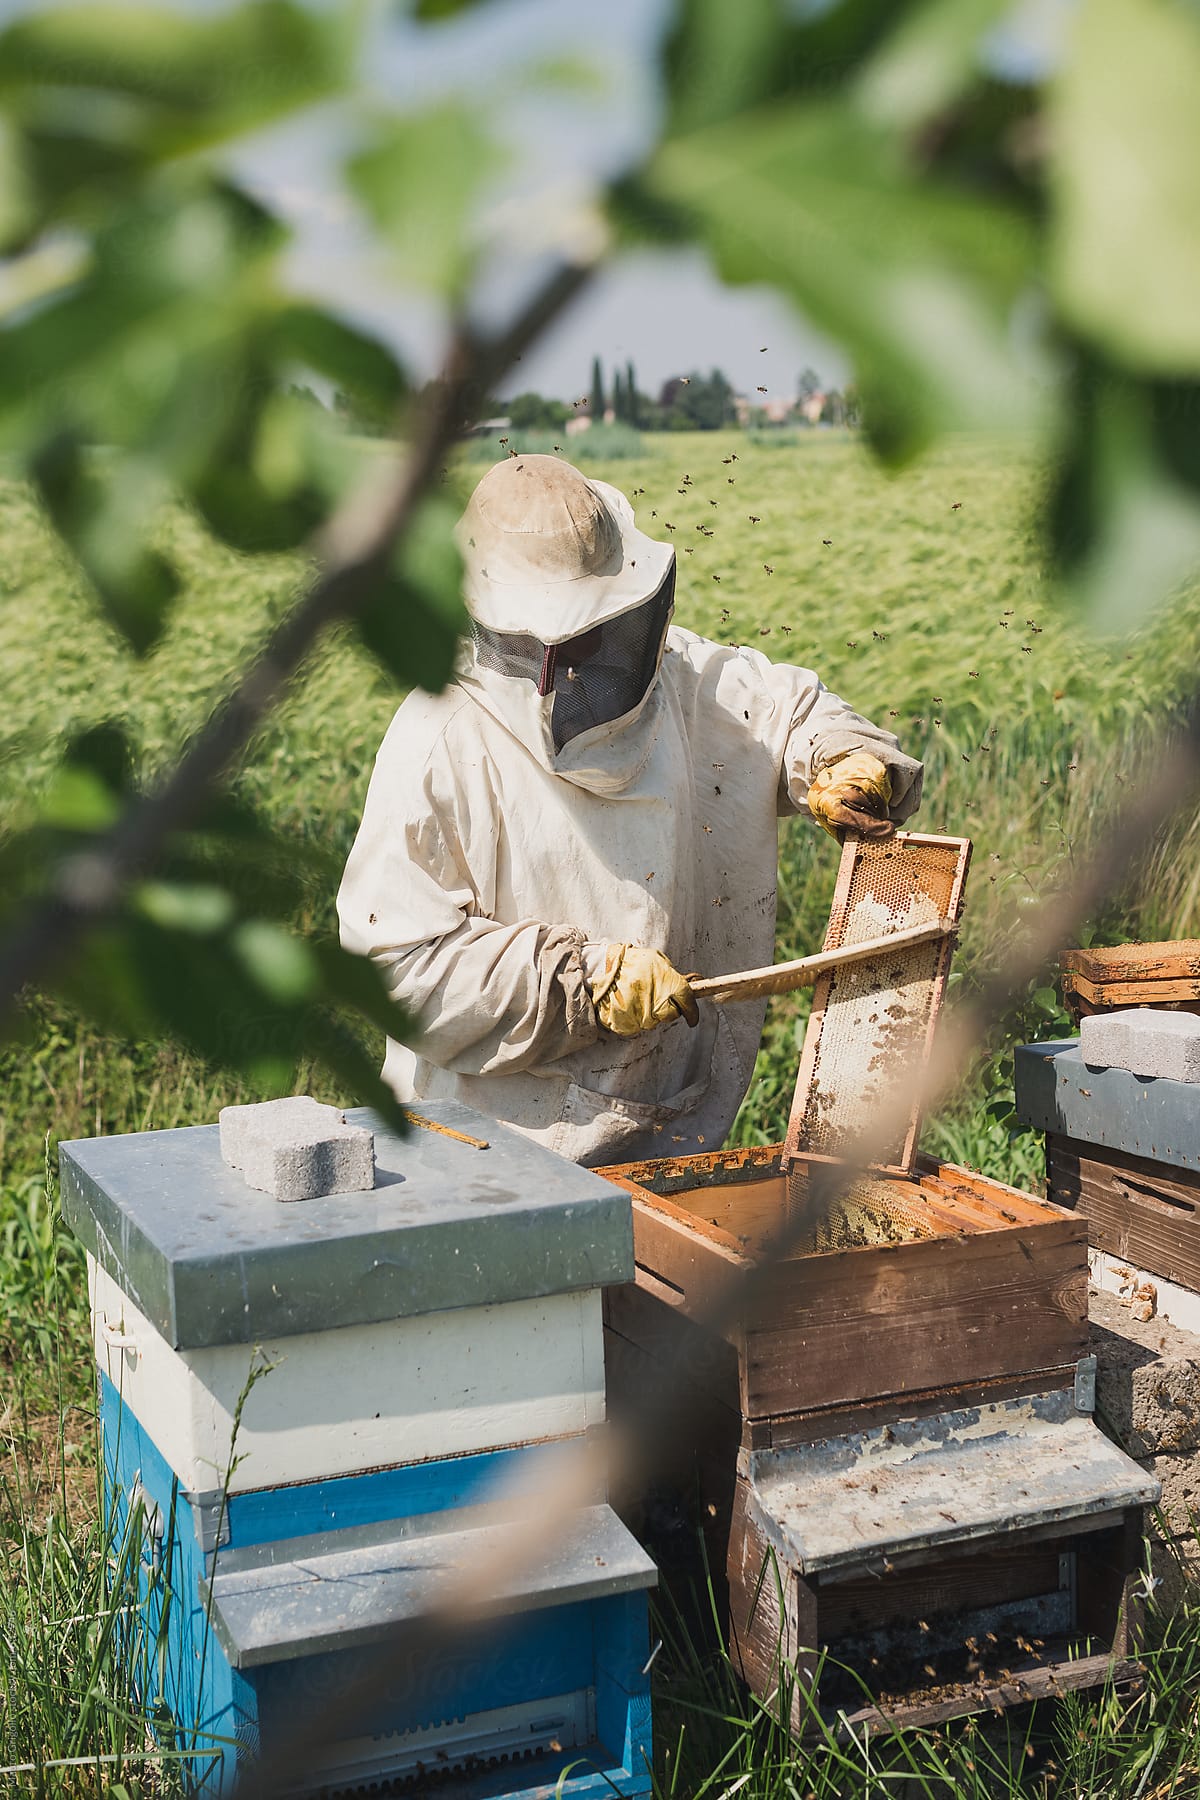 Beekeeper in the field